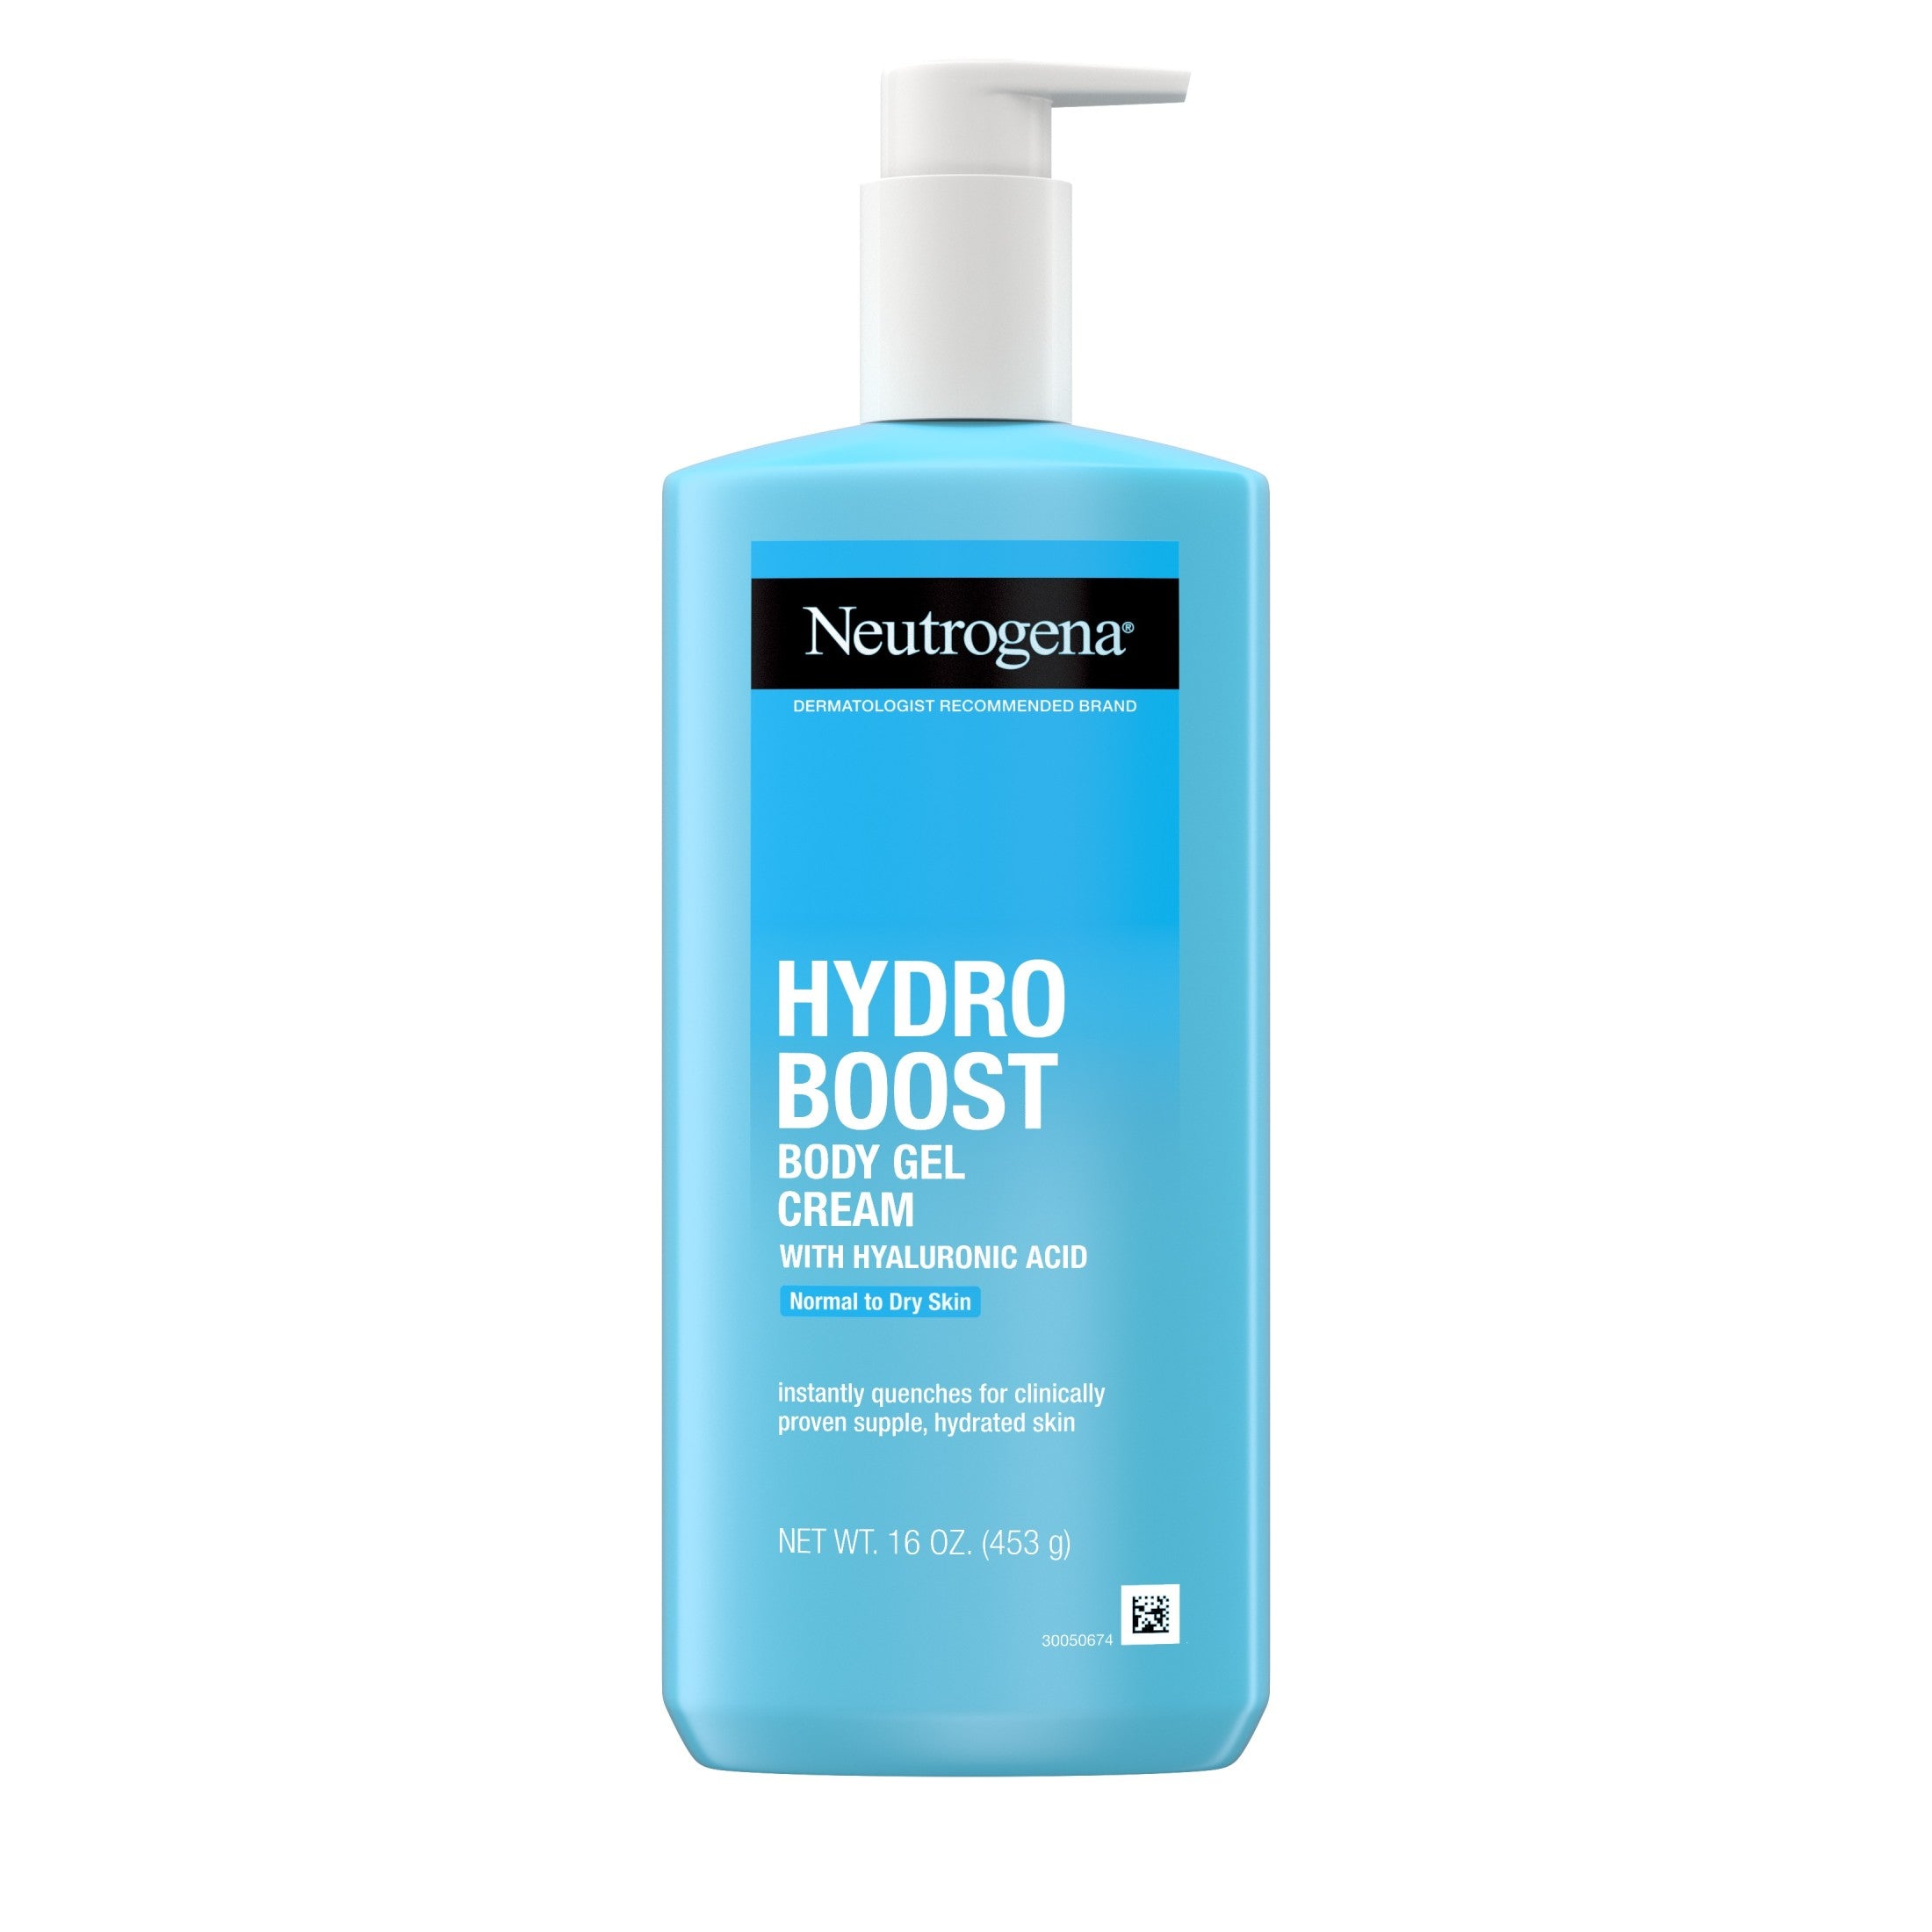 Neutrogena Hydro Boost Body Gel Cream with Hyaluronic Acid, 16 oz | MTTS263